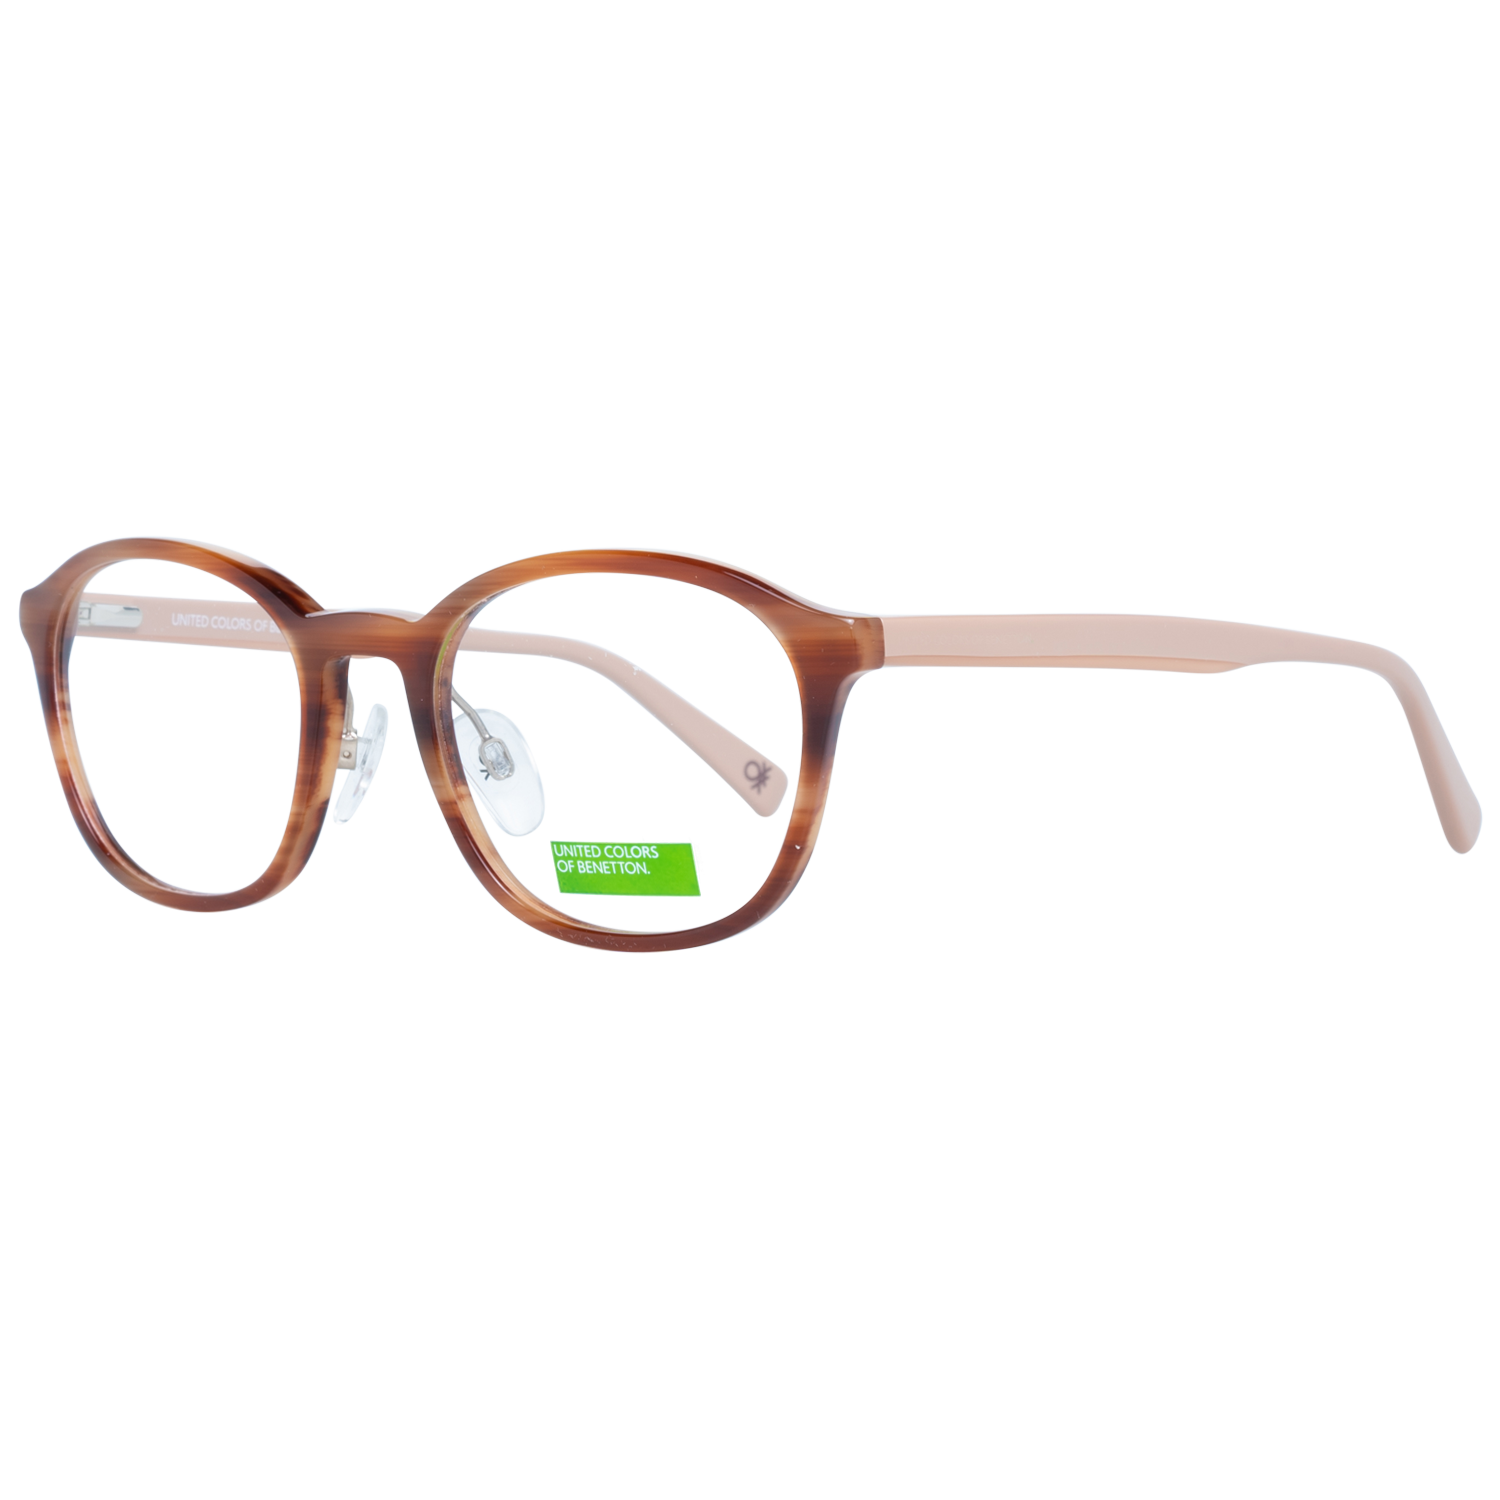 Benetton Frames Benetton Glasses Frames BEO1028 151 49 Eyeglasses Eyewear UK USA Australia 